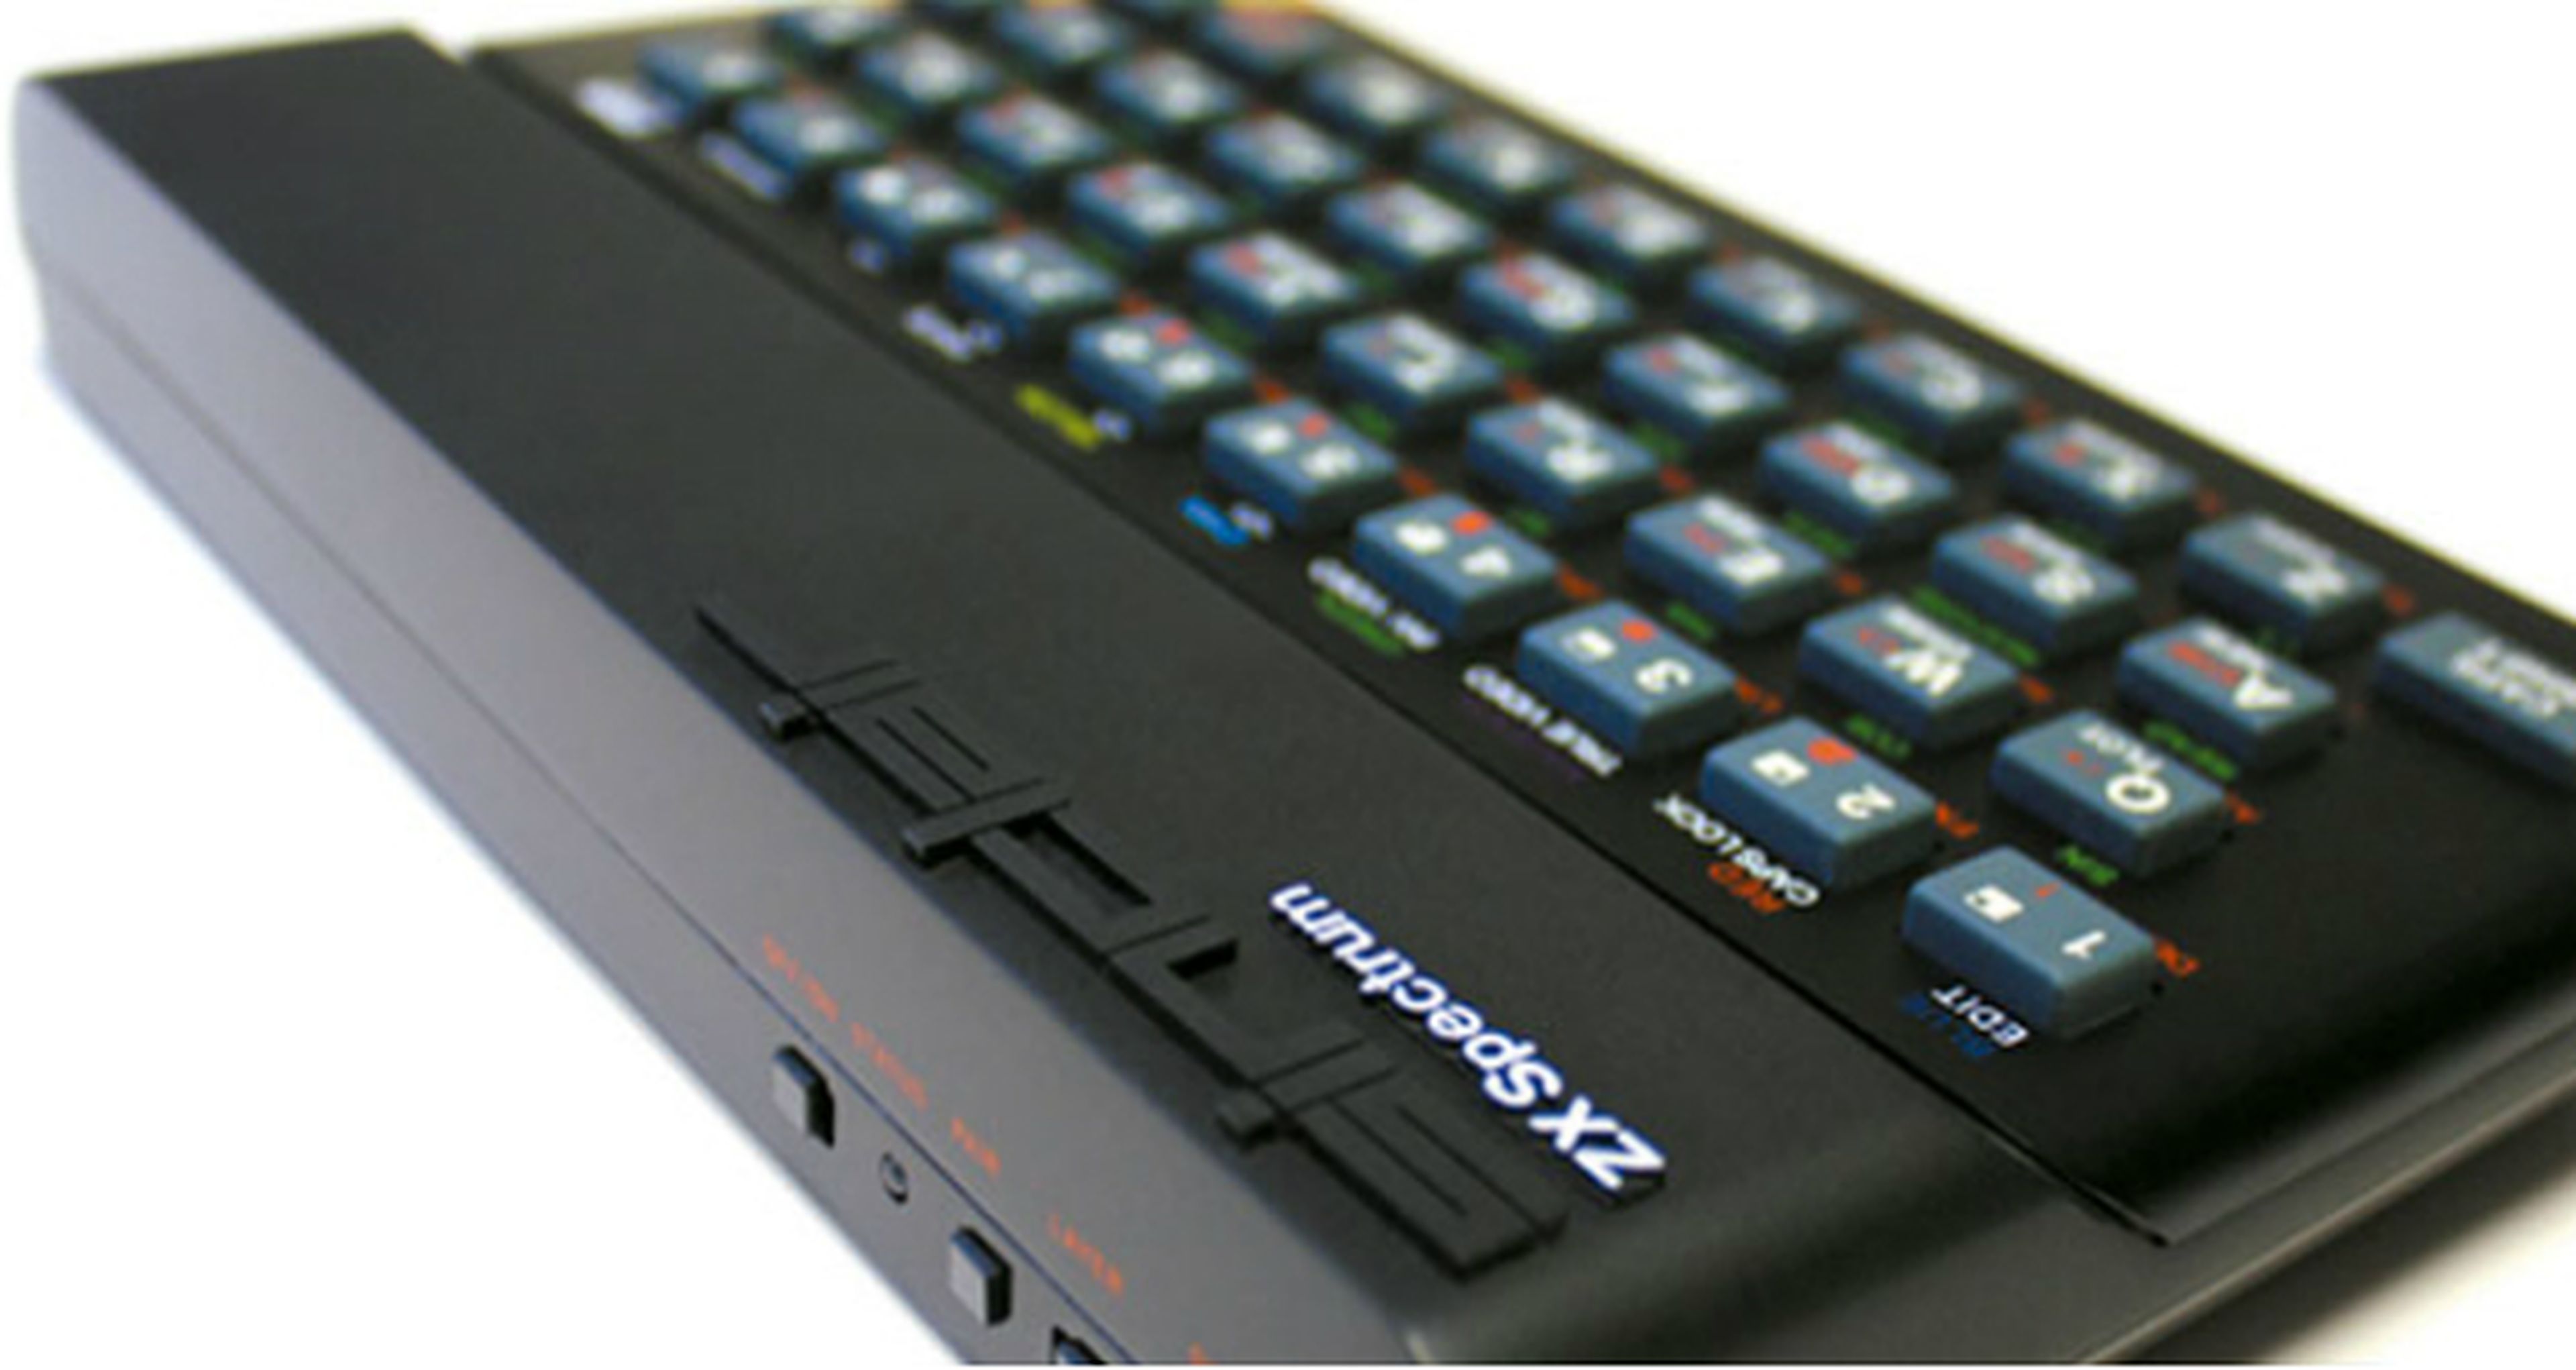 ZX Spectrum regresa en forma de teclado sólo en GAME